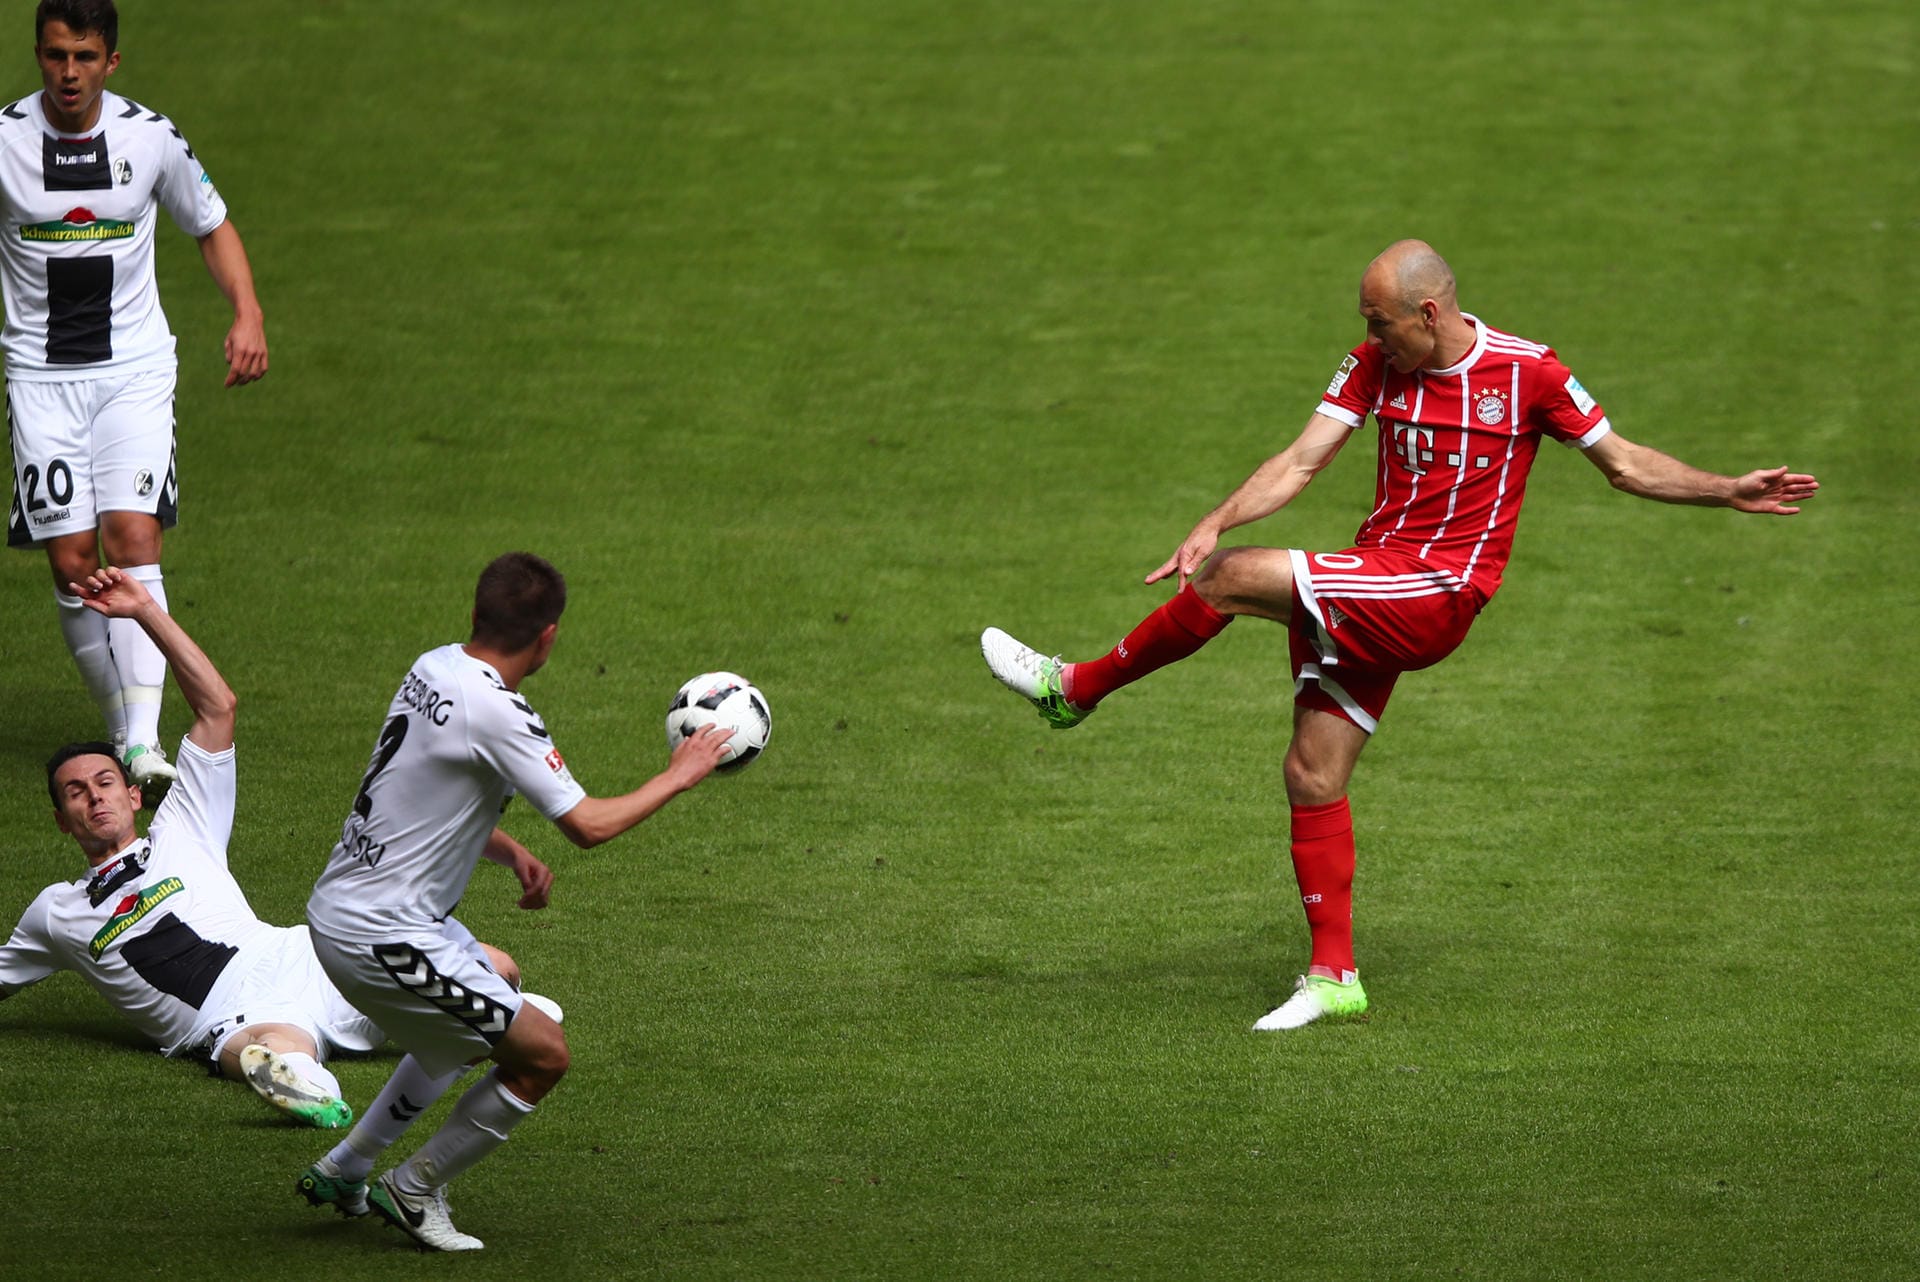 Frühe Führung für den Meister: Arjen Robben trifft gegen Freiburg schon in der 4. Minute.